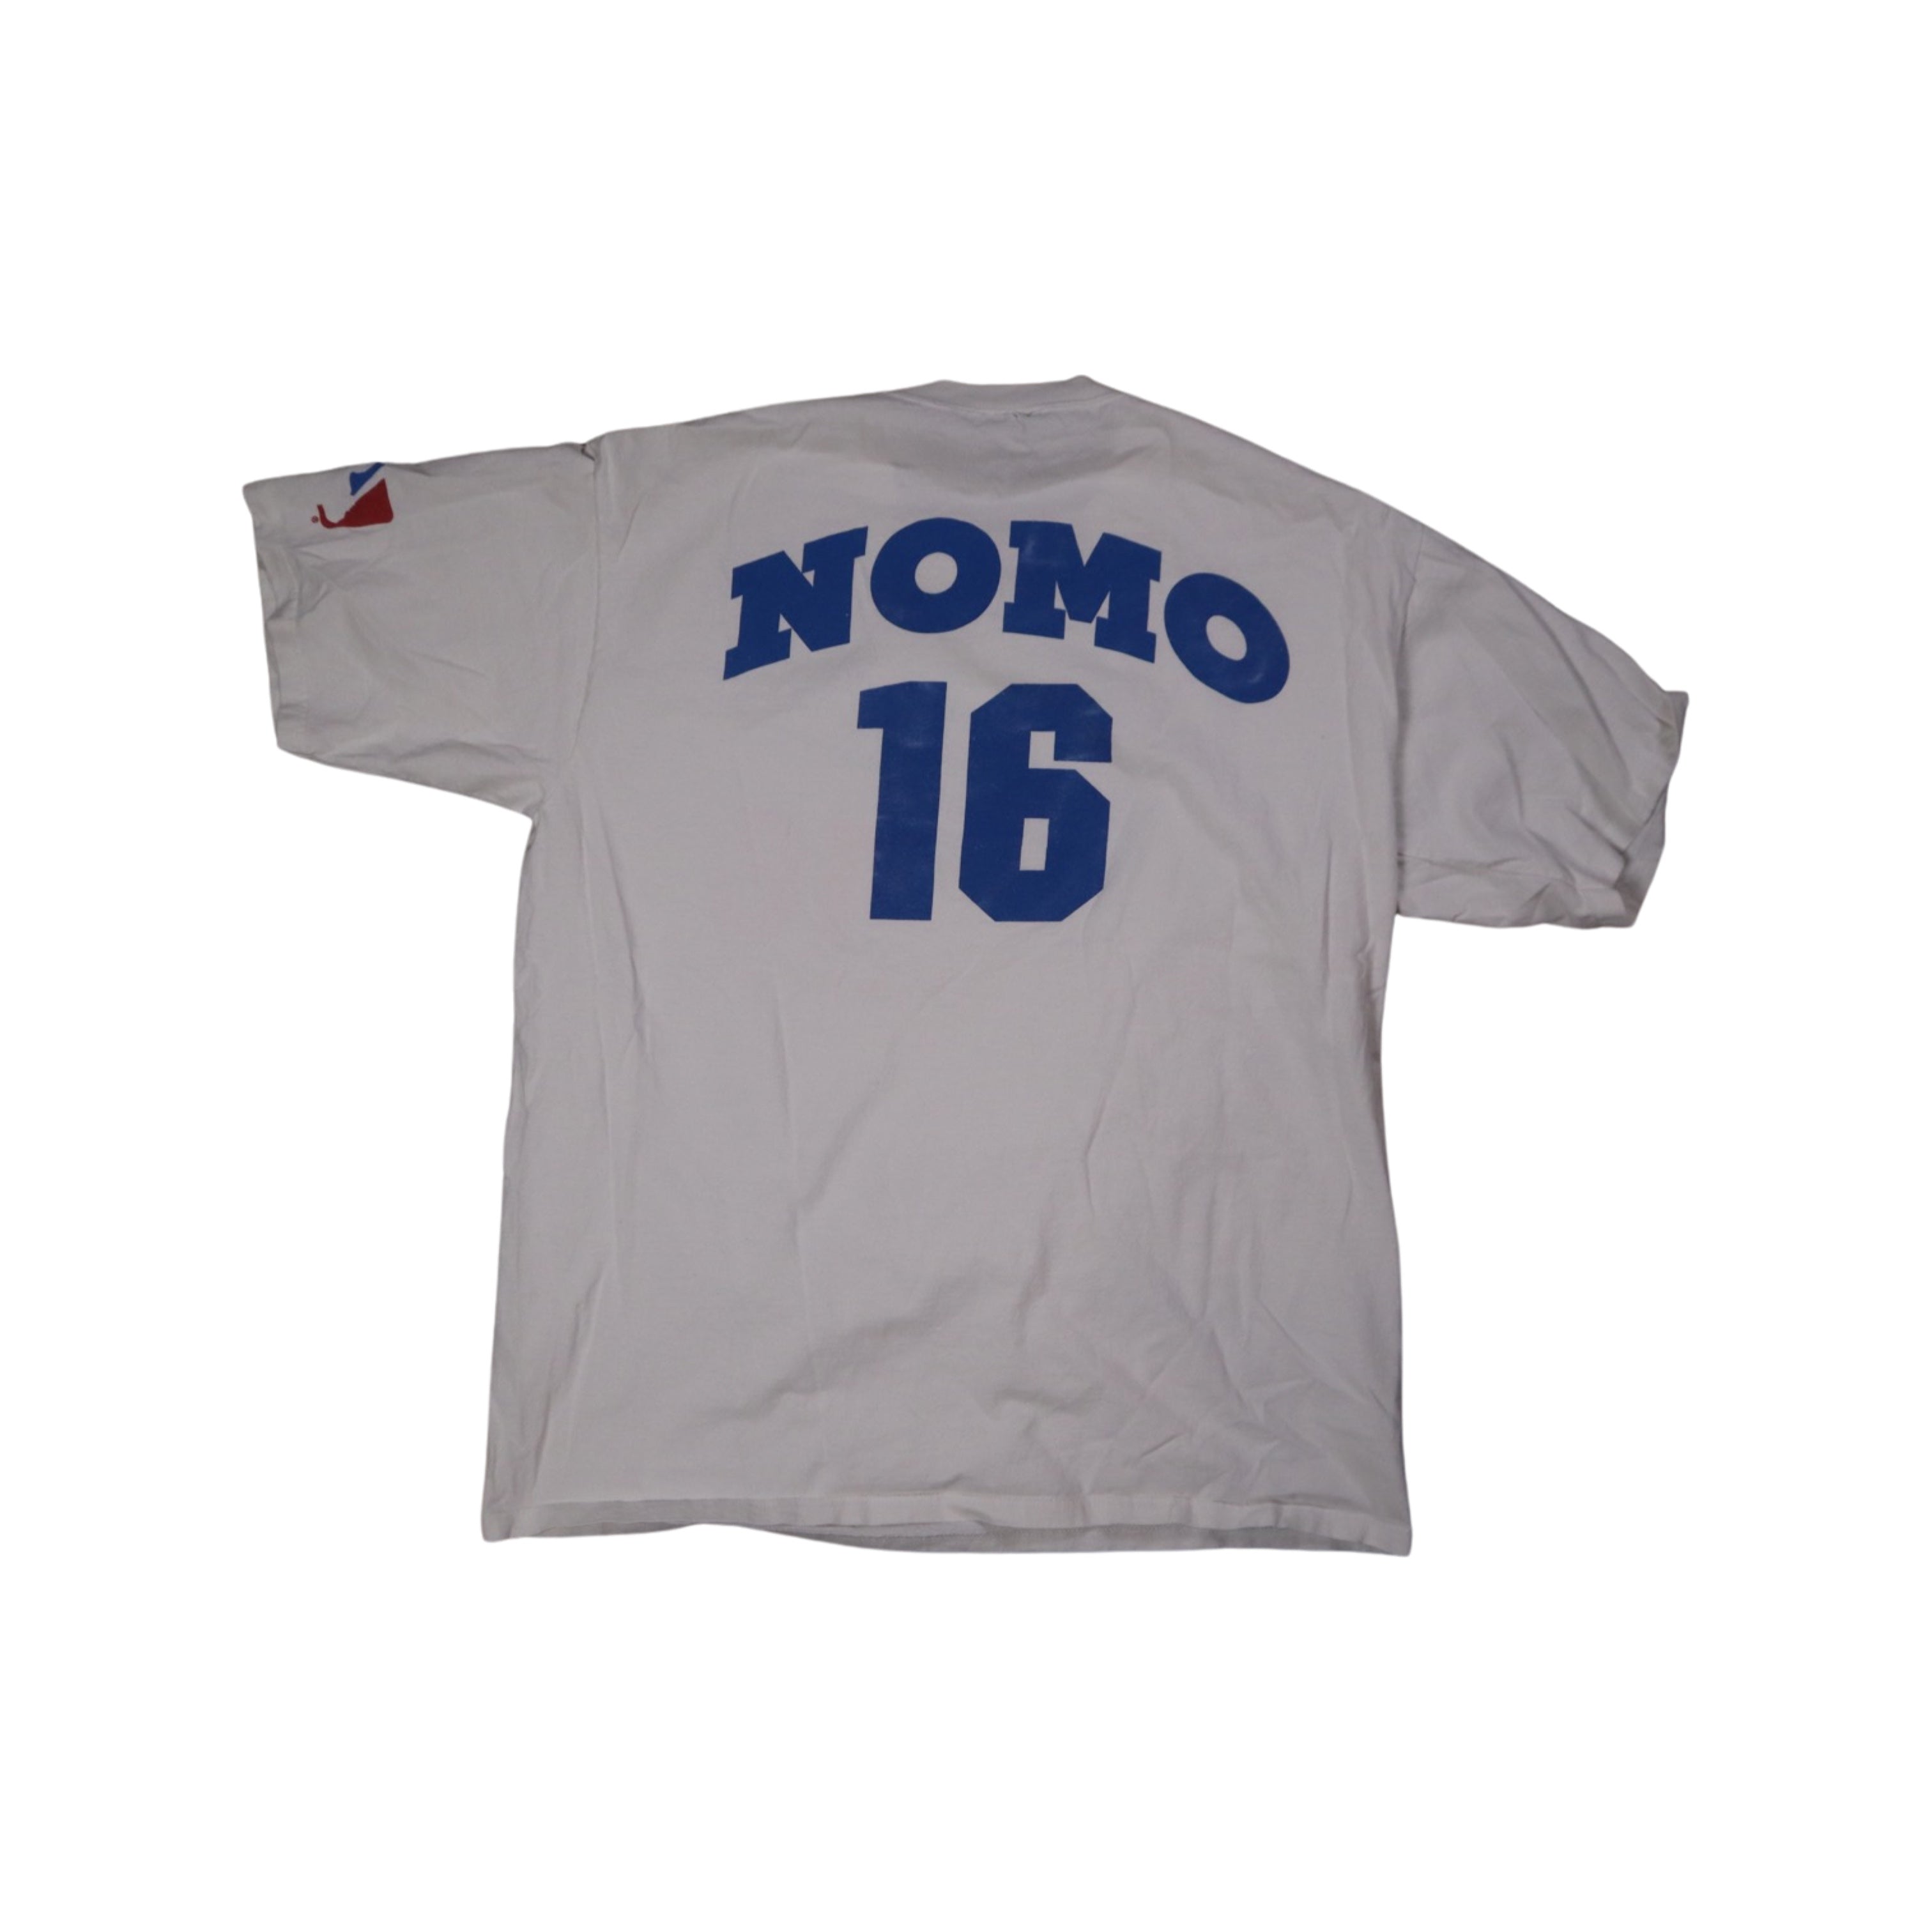 Los Angeles Dodgers 1995 Hideo Nomo T-Shirt (XL)